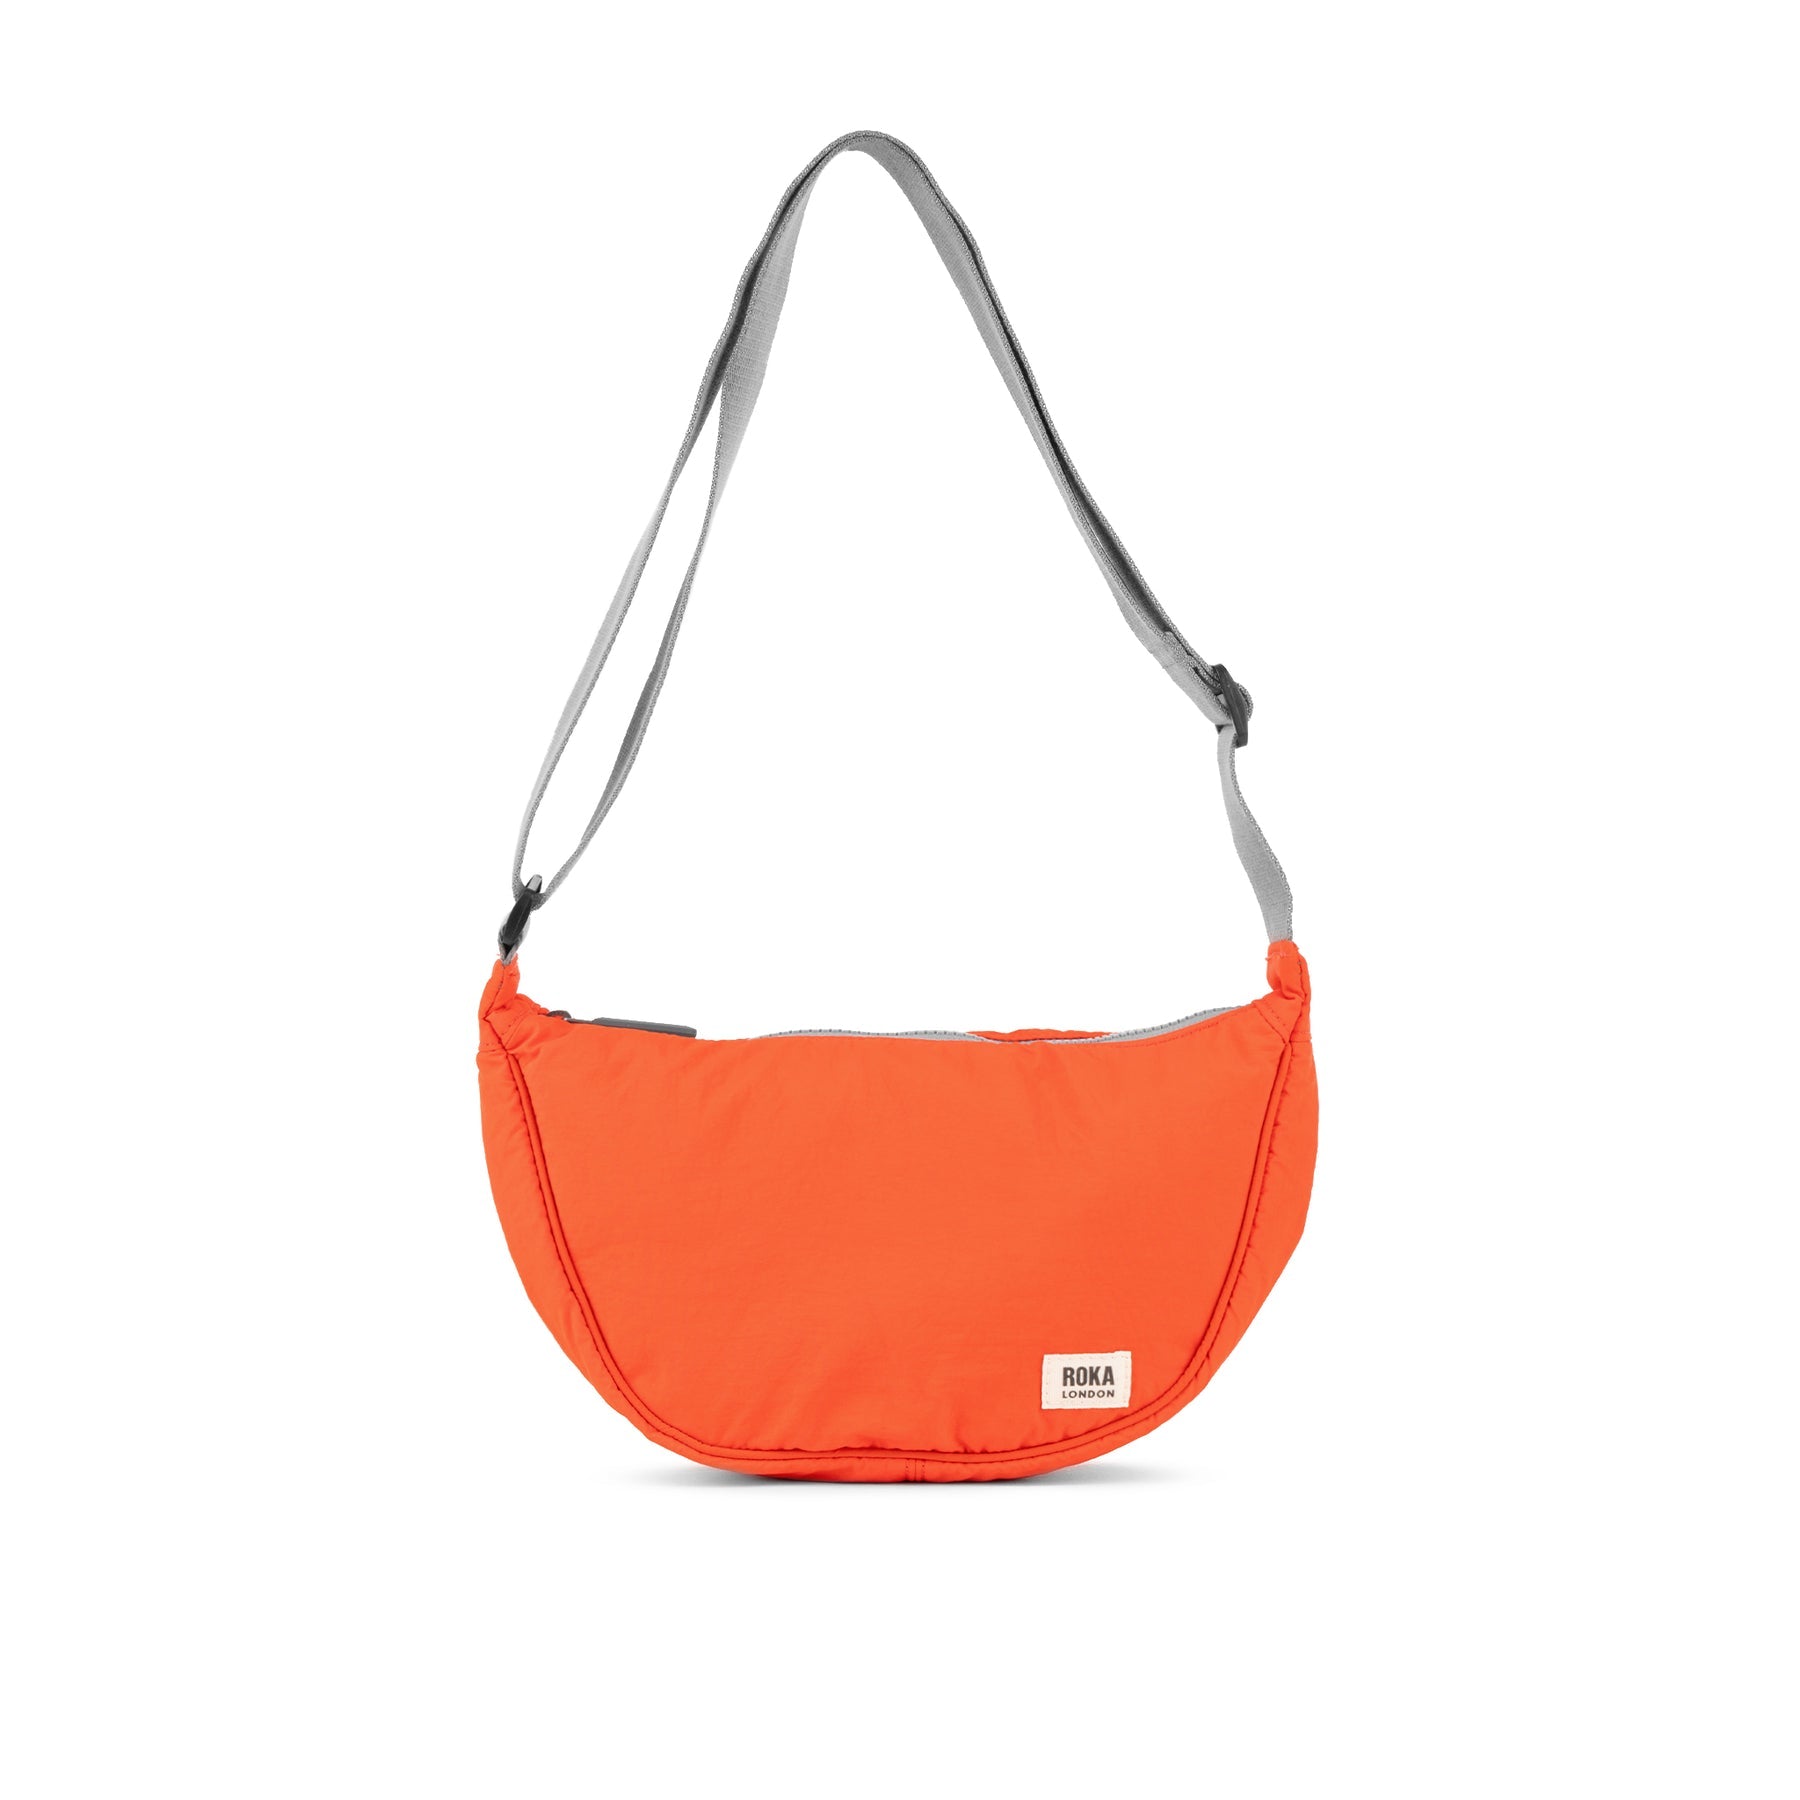 Tangerine Farringdon Bag